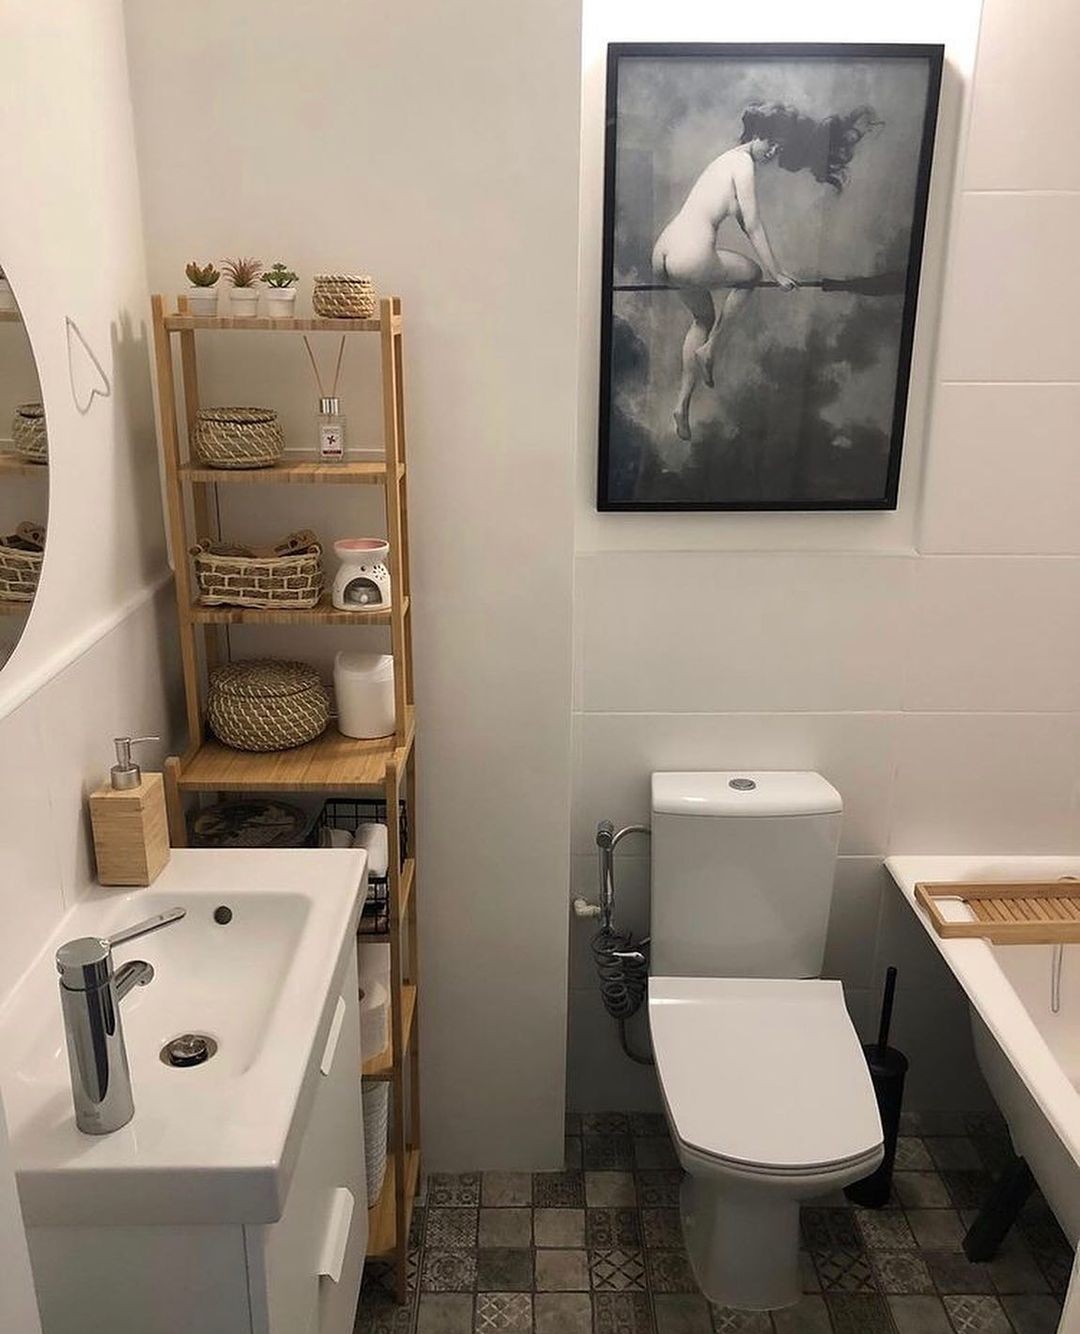 Настоящая скрытая камера в деревенском туалете показала, как женщина справляет нужду